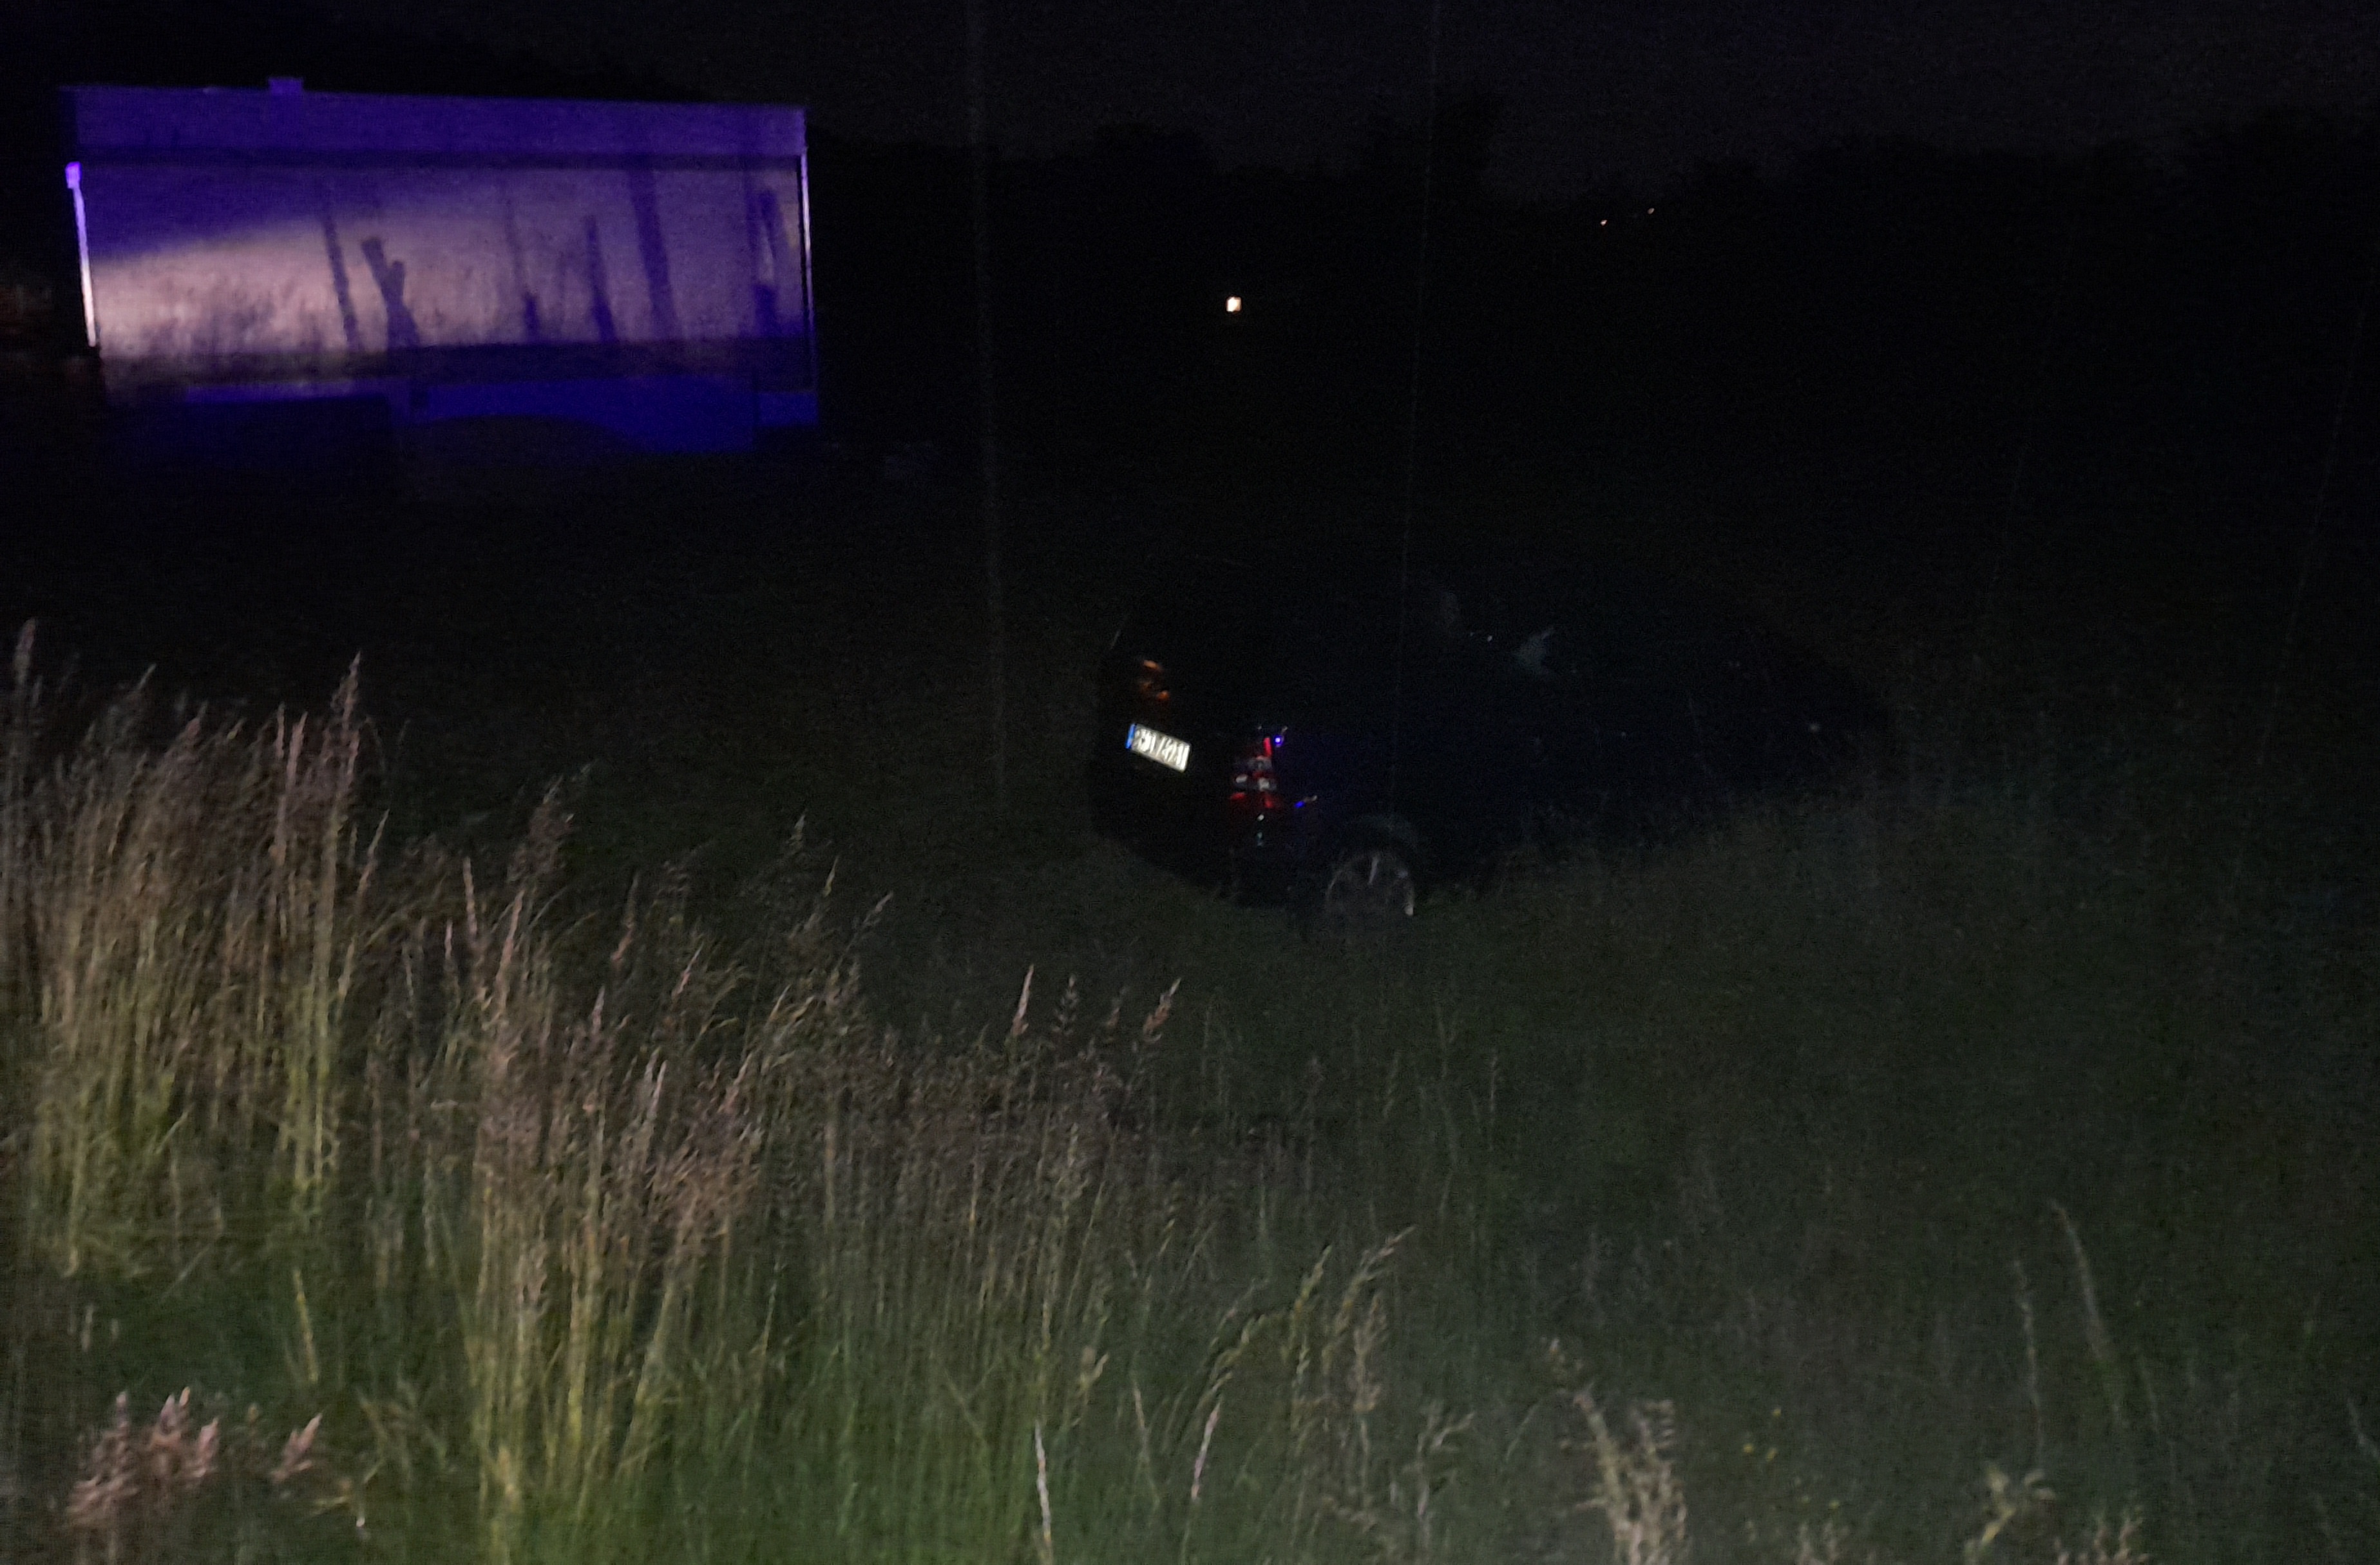 Pijany prowadząc samochód uderzył w słup, po czym wylądował na polu, fot. art